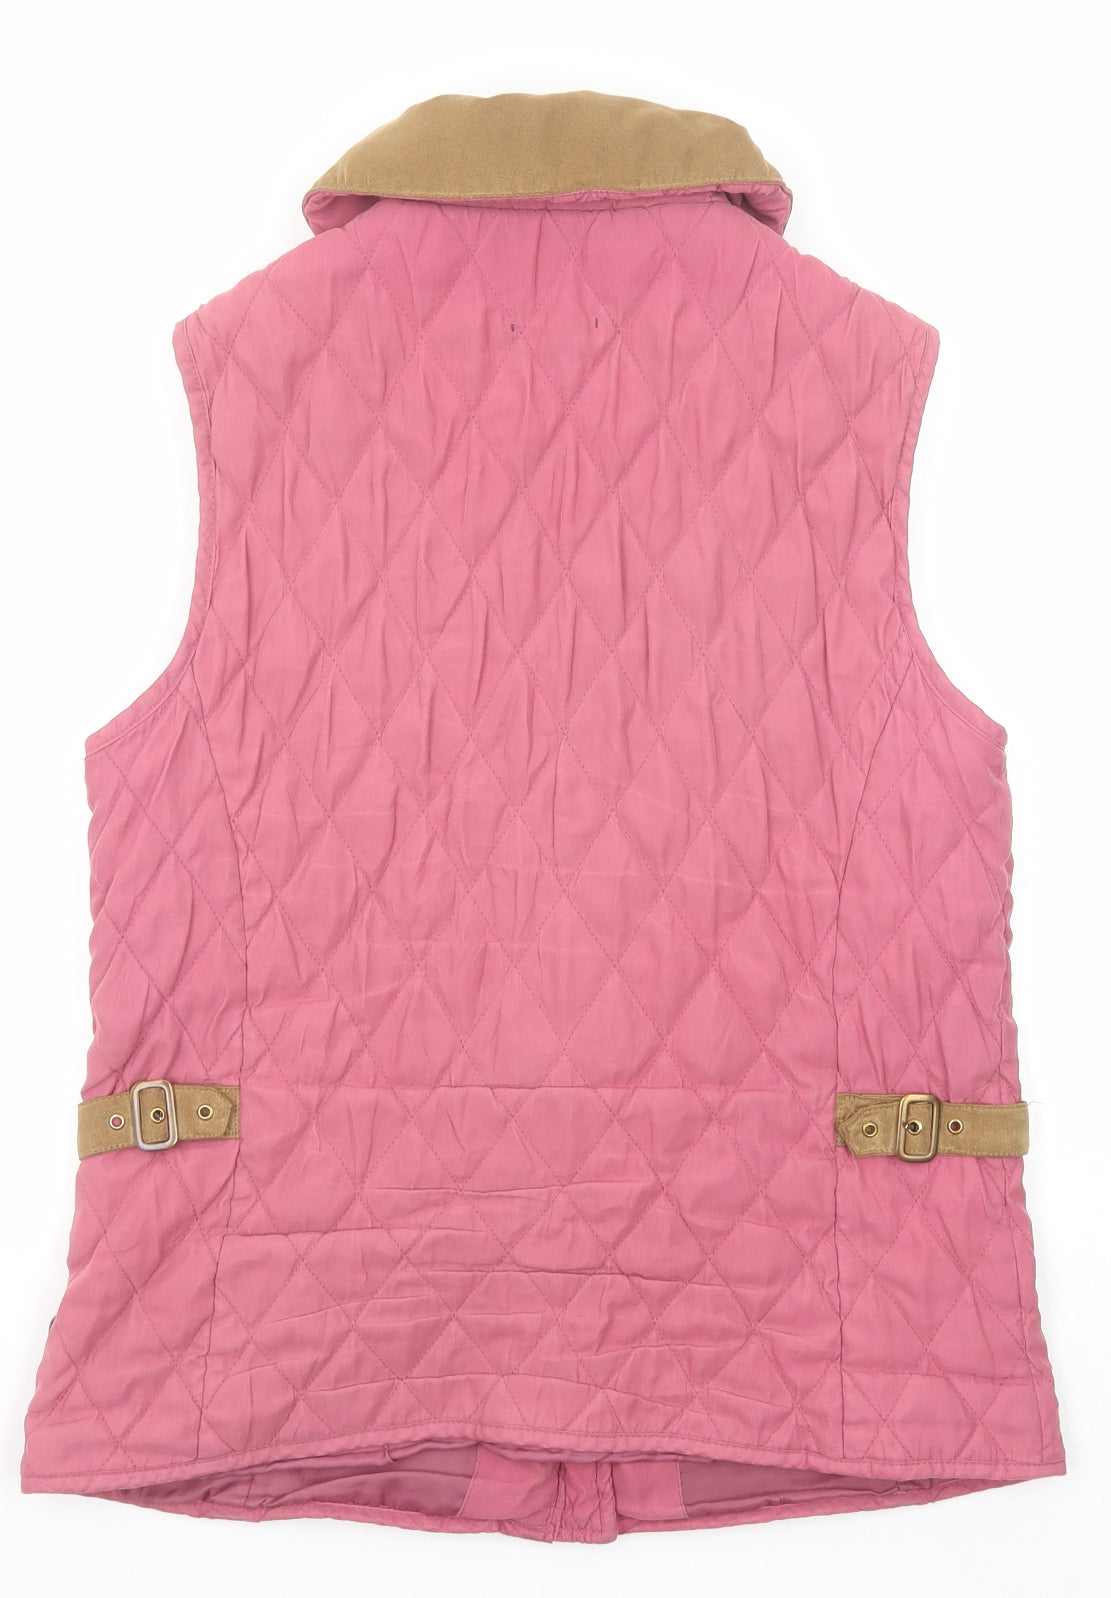 Hawkshead Womens Pink Gilet Jacket Size 10 Zip